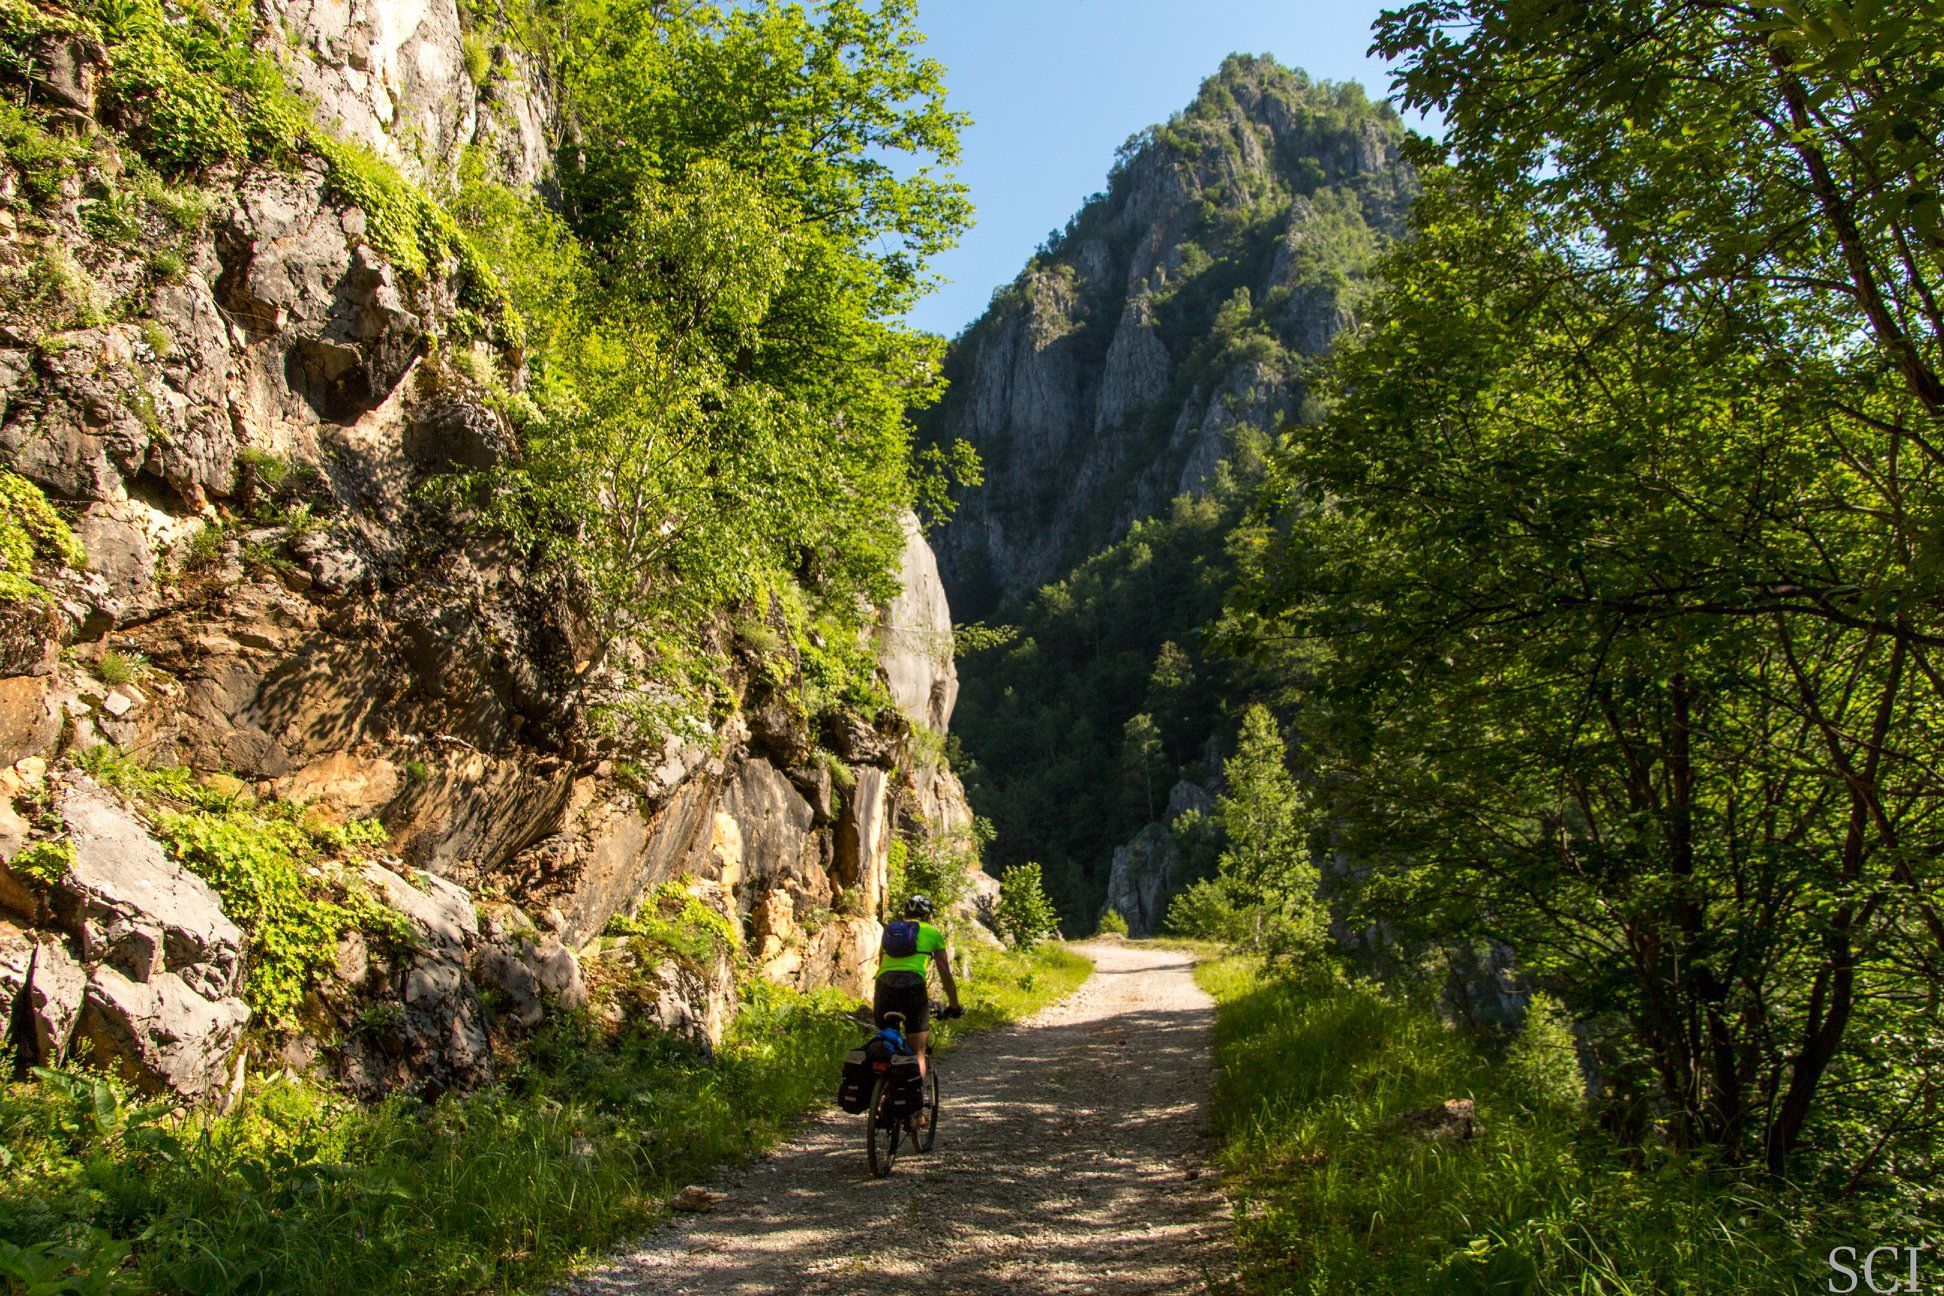  Cicloturism pe Valea Cernei - Csaba-Ilie Silvesan